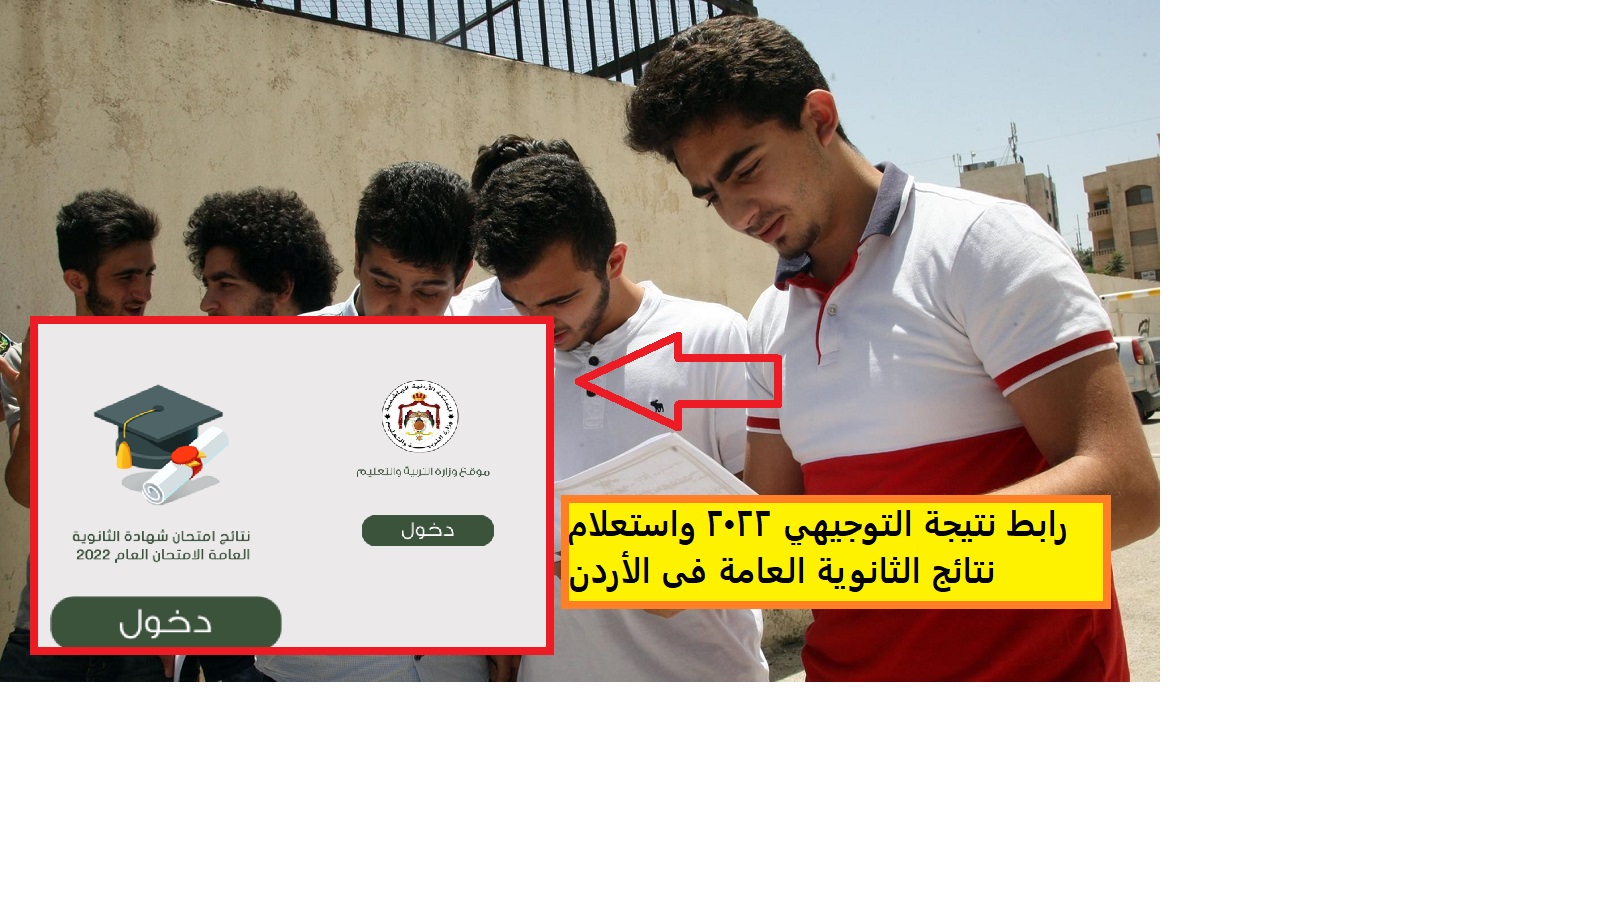 رابط نتيجة التوجيهي 2022 واستعلام نتائج الثانوية العامة فى الأردن tawjihi.jo